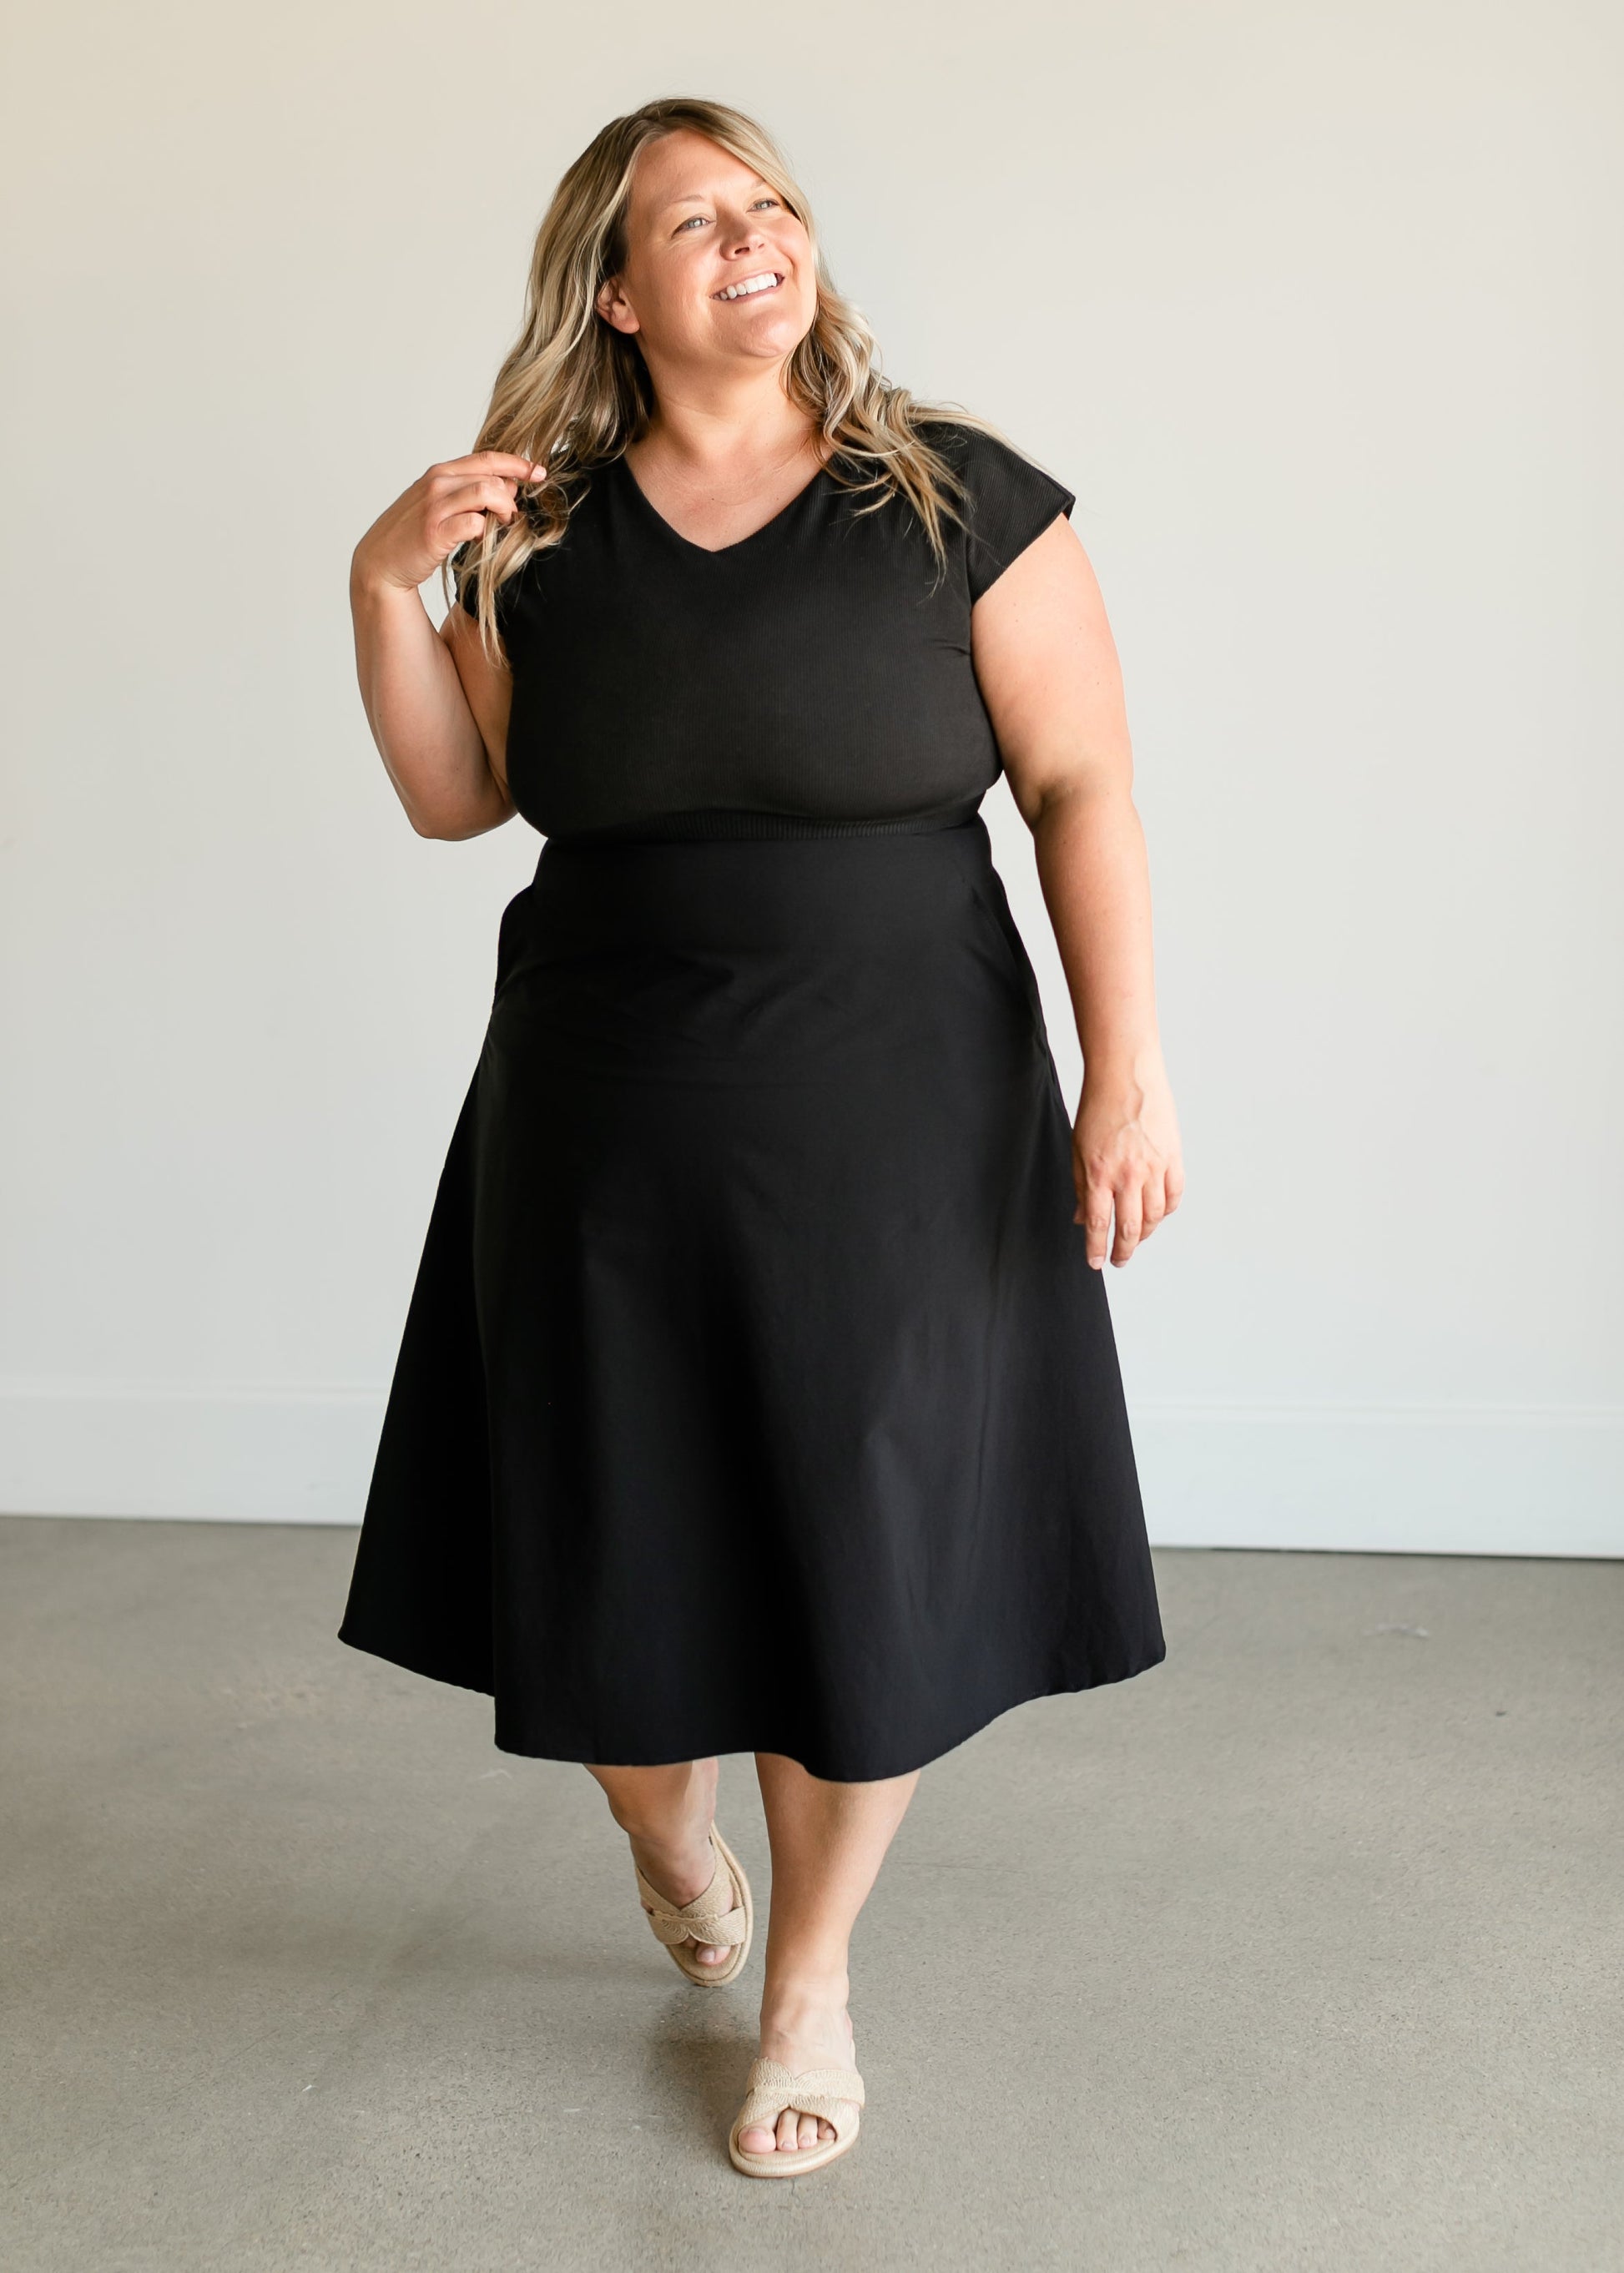 Kate Cap Sleeve Black Midi Dress Dresses